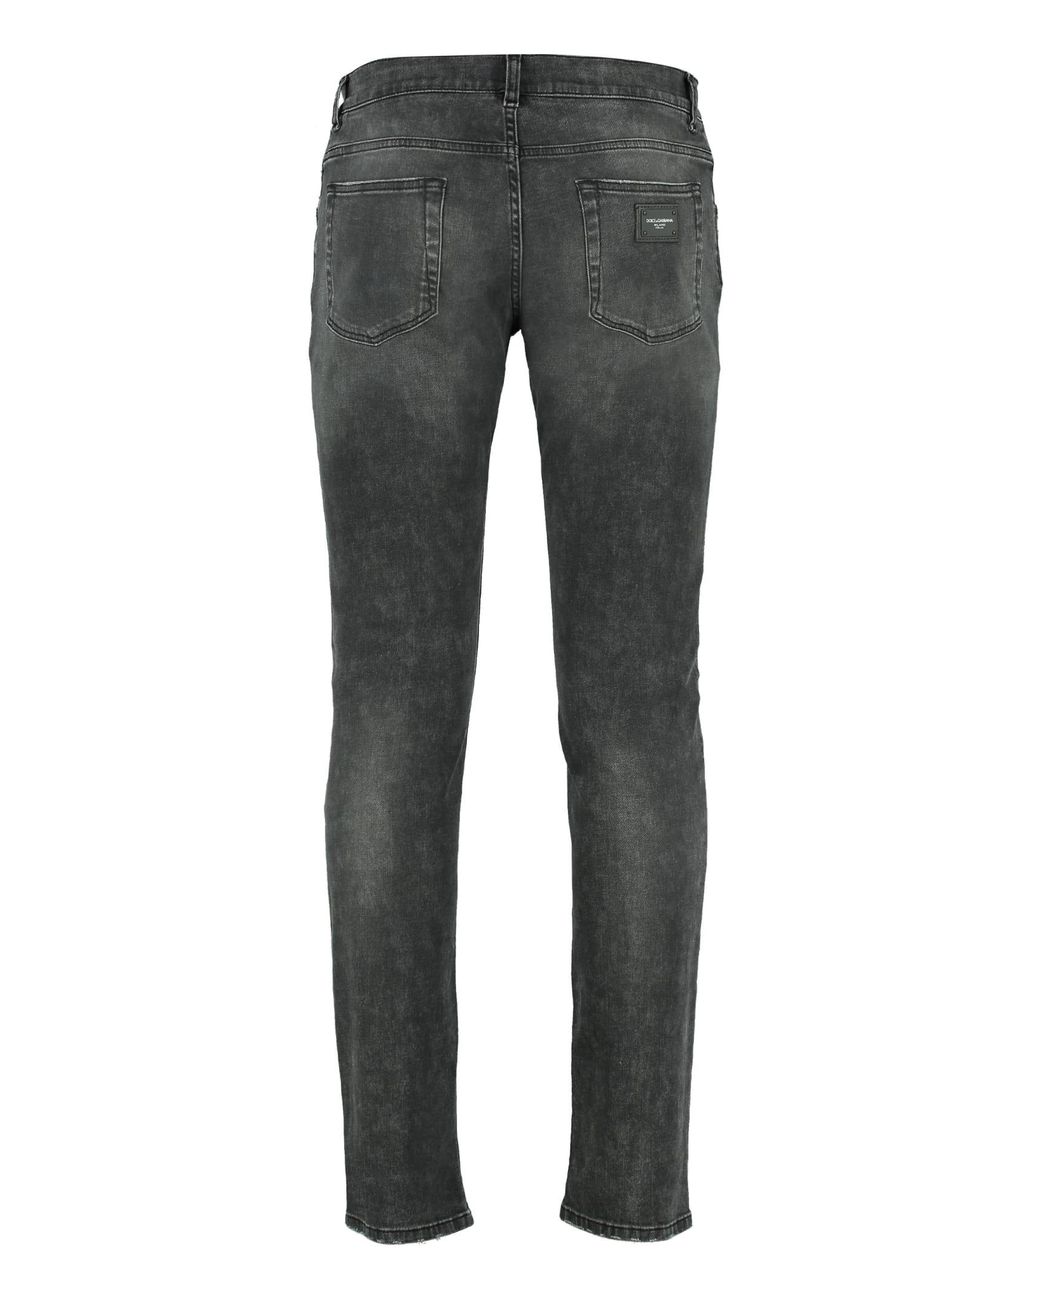 Dolce & Gabbana Denim 5-pocket Skinny Jeans in Black Grey Mens Jeans Dolce & Gabbana Jeans for Men Save 13% 